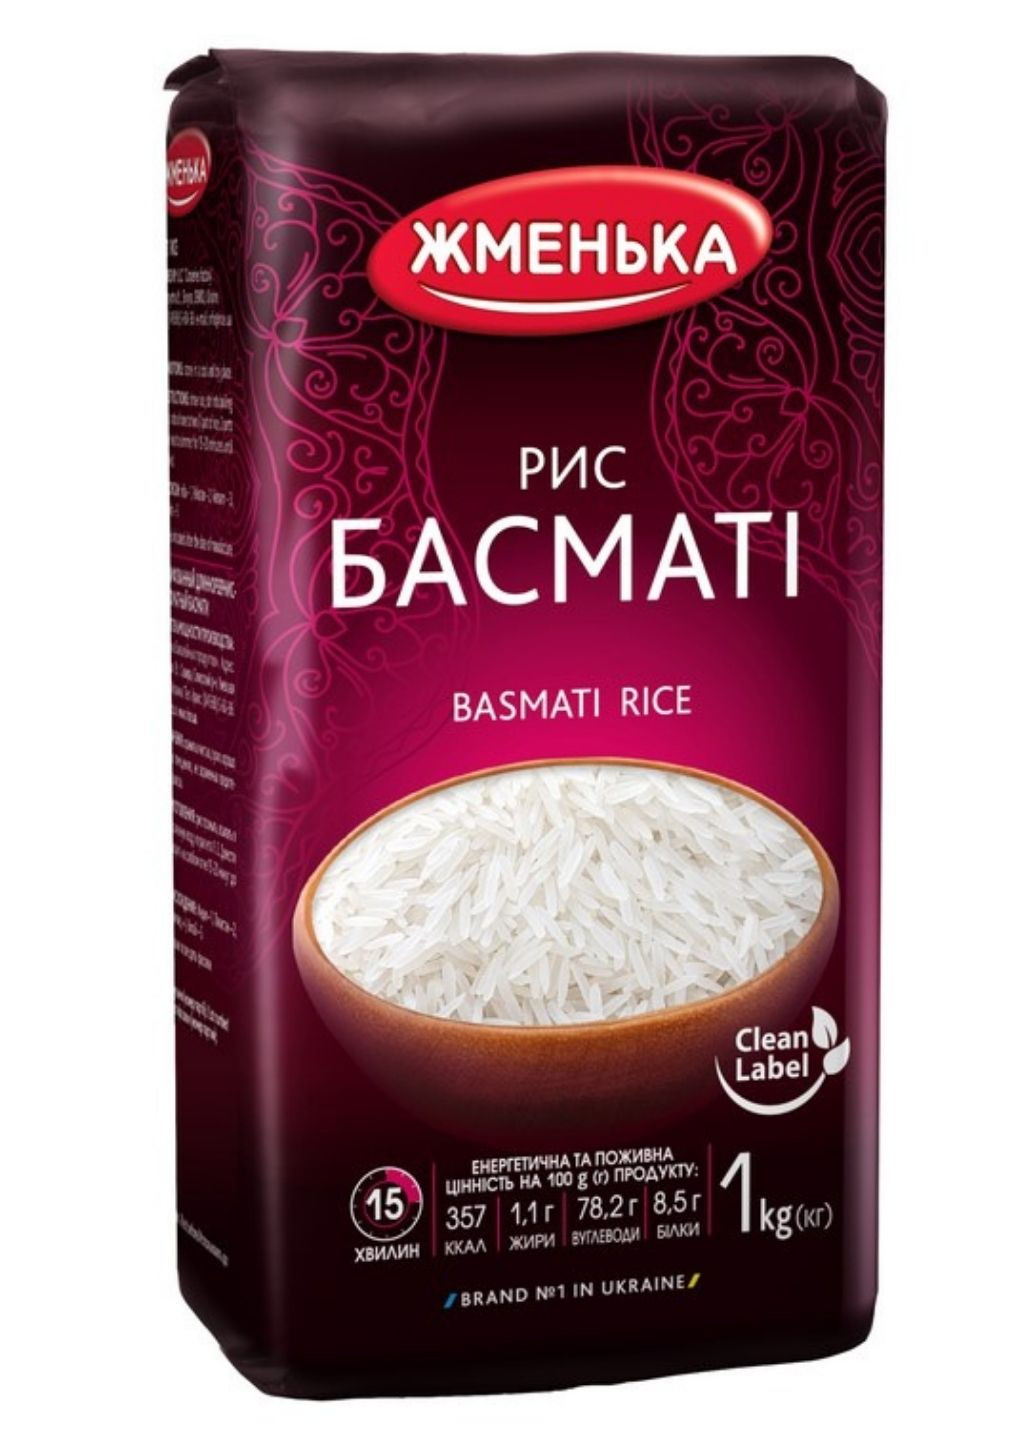 Рис Басматі 1 кг Жменька (244010548)